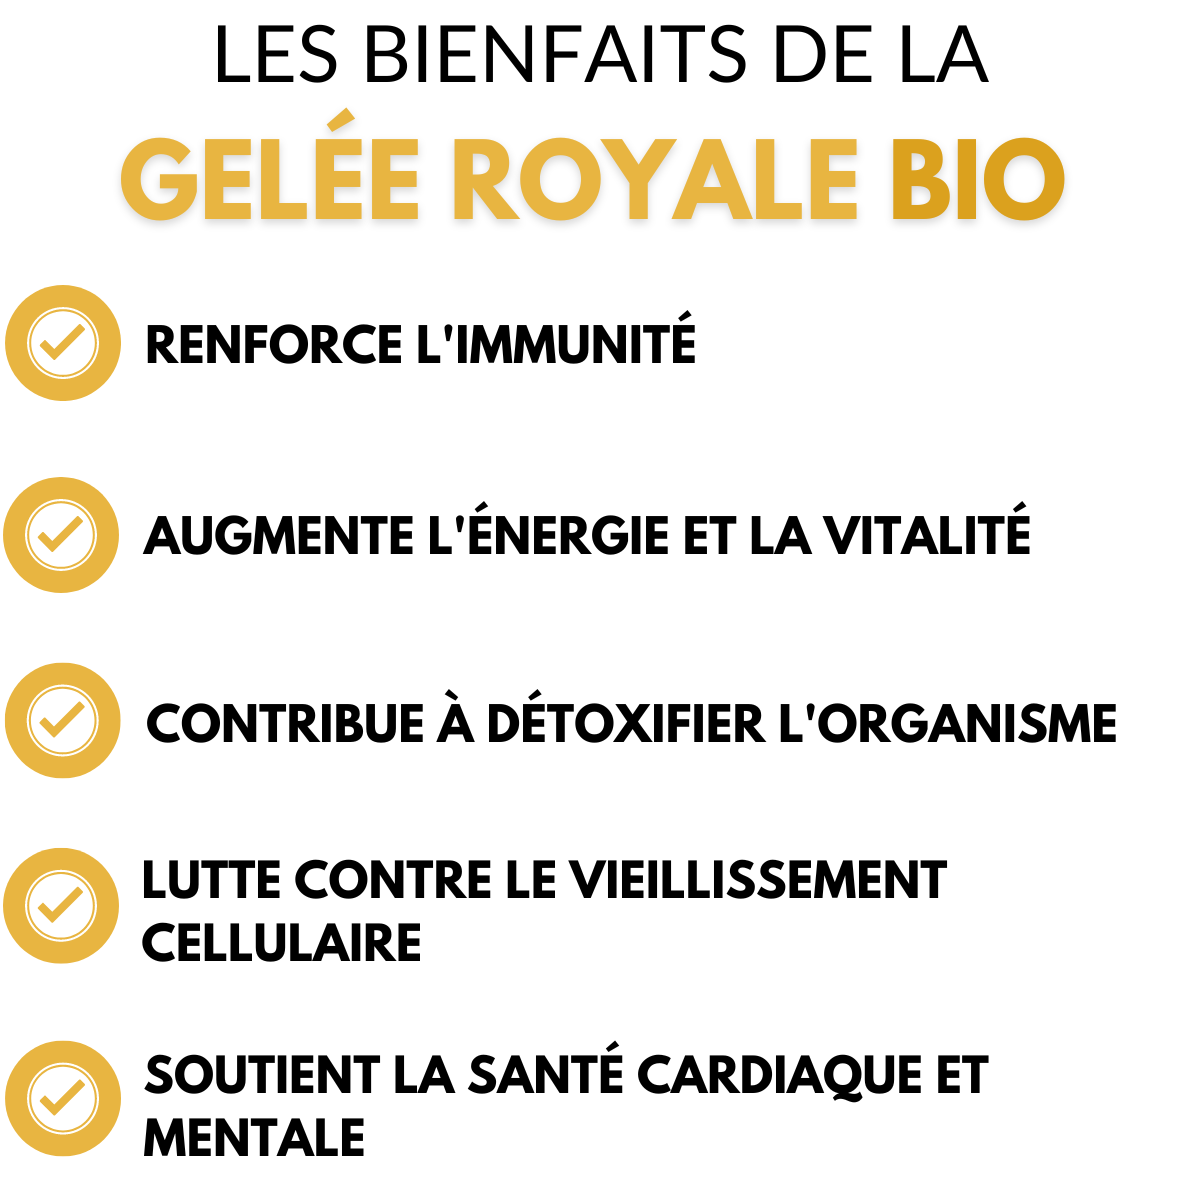 Gelée royale Bio Française 10g - Cure de 3 semaines - 1 mois (environ)  production Française - Livraison gratuite - La Grange aux Abeilles